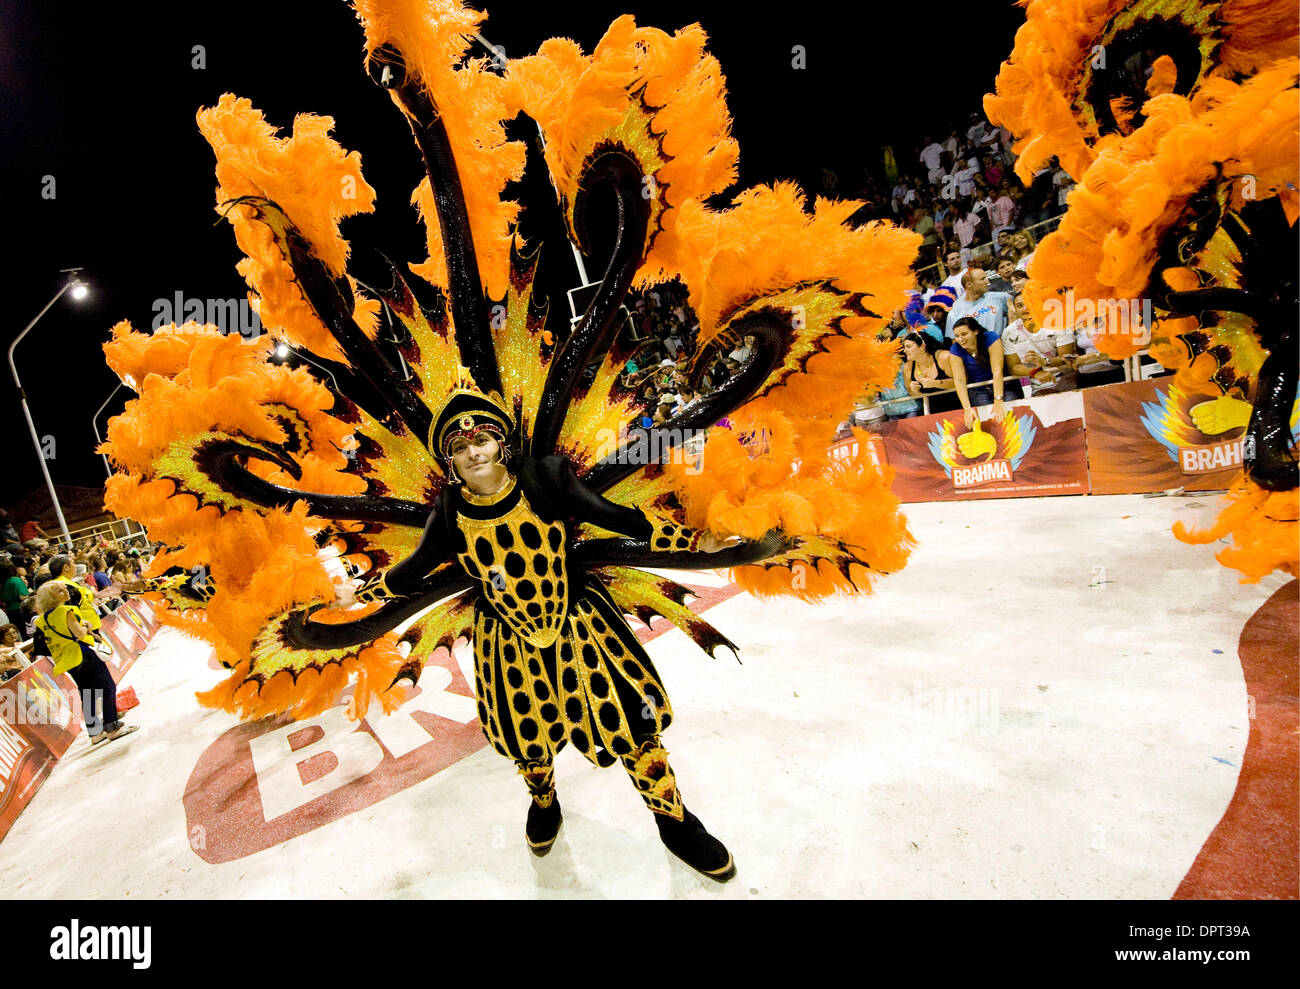 Feb 28, 2009 - Gualeguaychu, Buenos Aires, Argentina - un ballerino con Mari Mari si muove attraverso il Corsodromo durante il carnevale di Gualeguaychu, Argentina. (Credito Immagine: © Caitlin M Kelly/ZUMA Press) Foto Stock